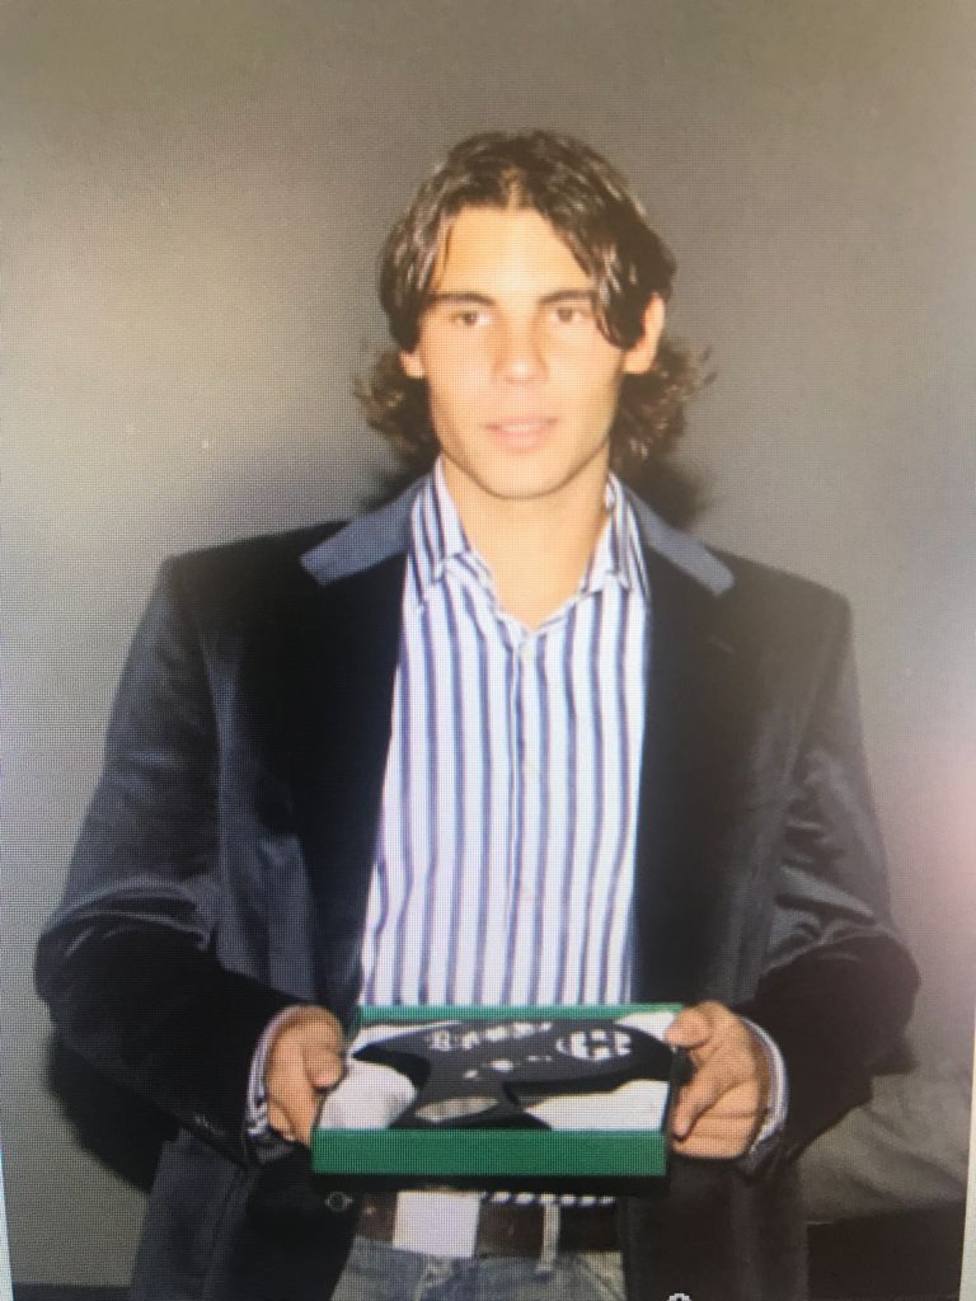 Fim de uma era! Rafael Nadal não está entre os 10 melhores tenistas do mundo  após 17 anos - Fotos - R7 Mais Esportes